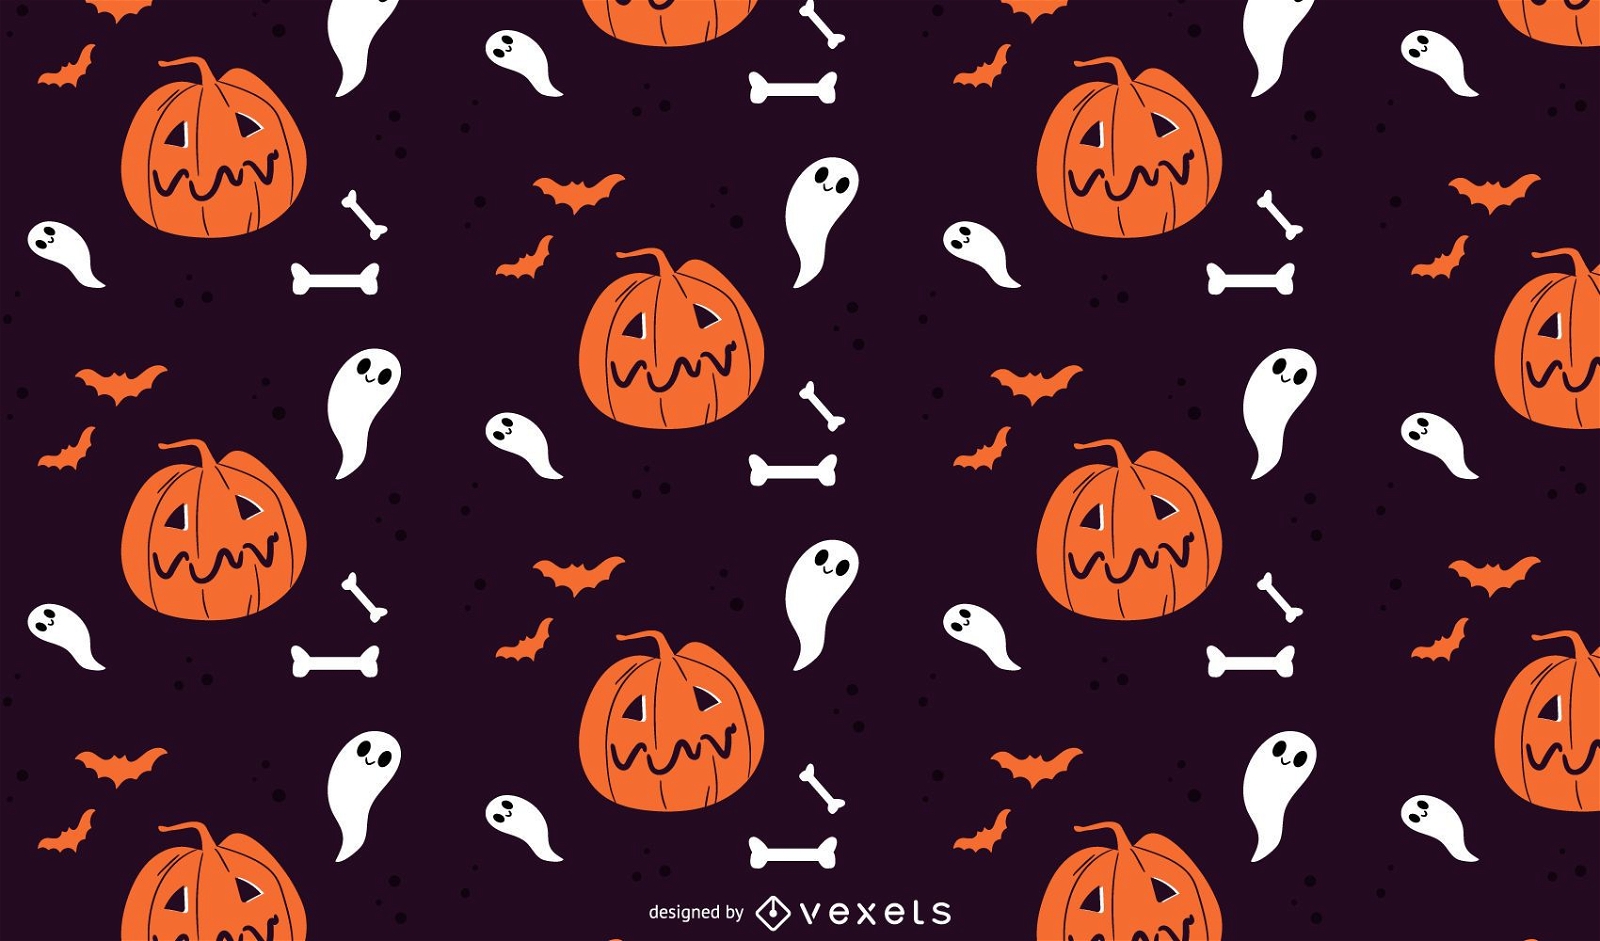 Padrão de Halloween com abóboras e fantasmas